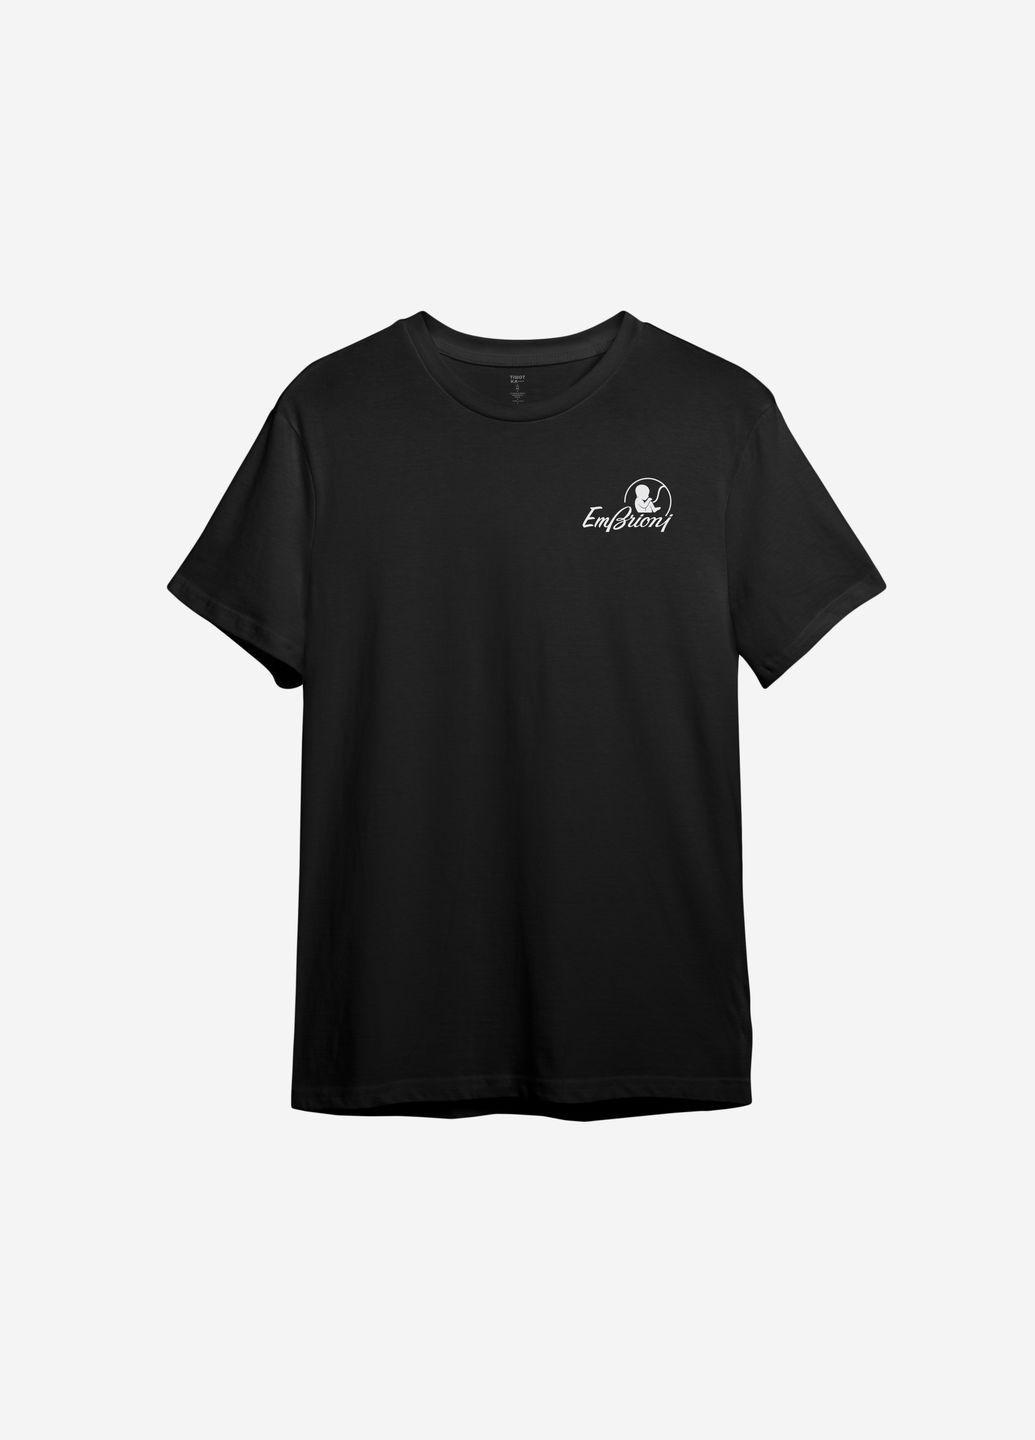 Черная футболка с принтом "embrioni" (маленький принт) ТiШОТКА